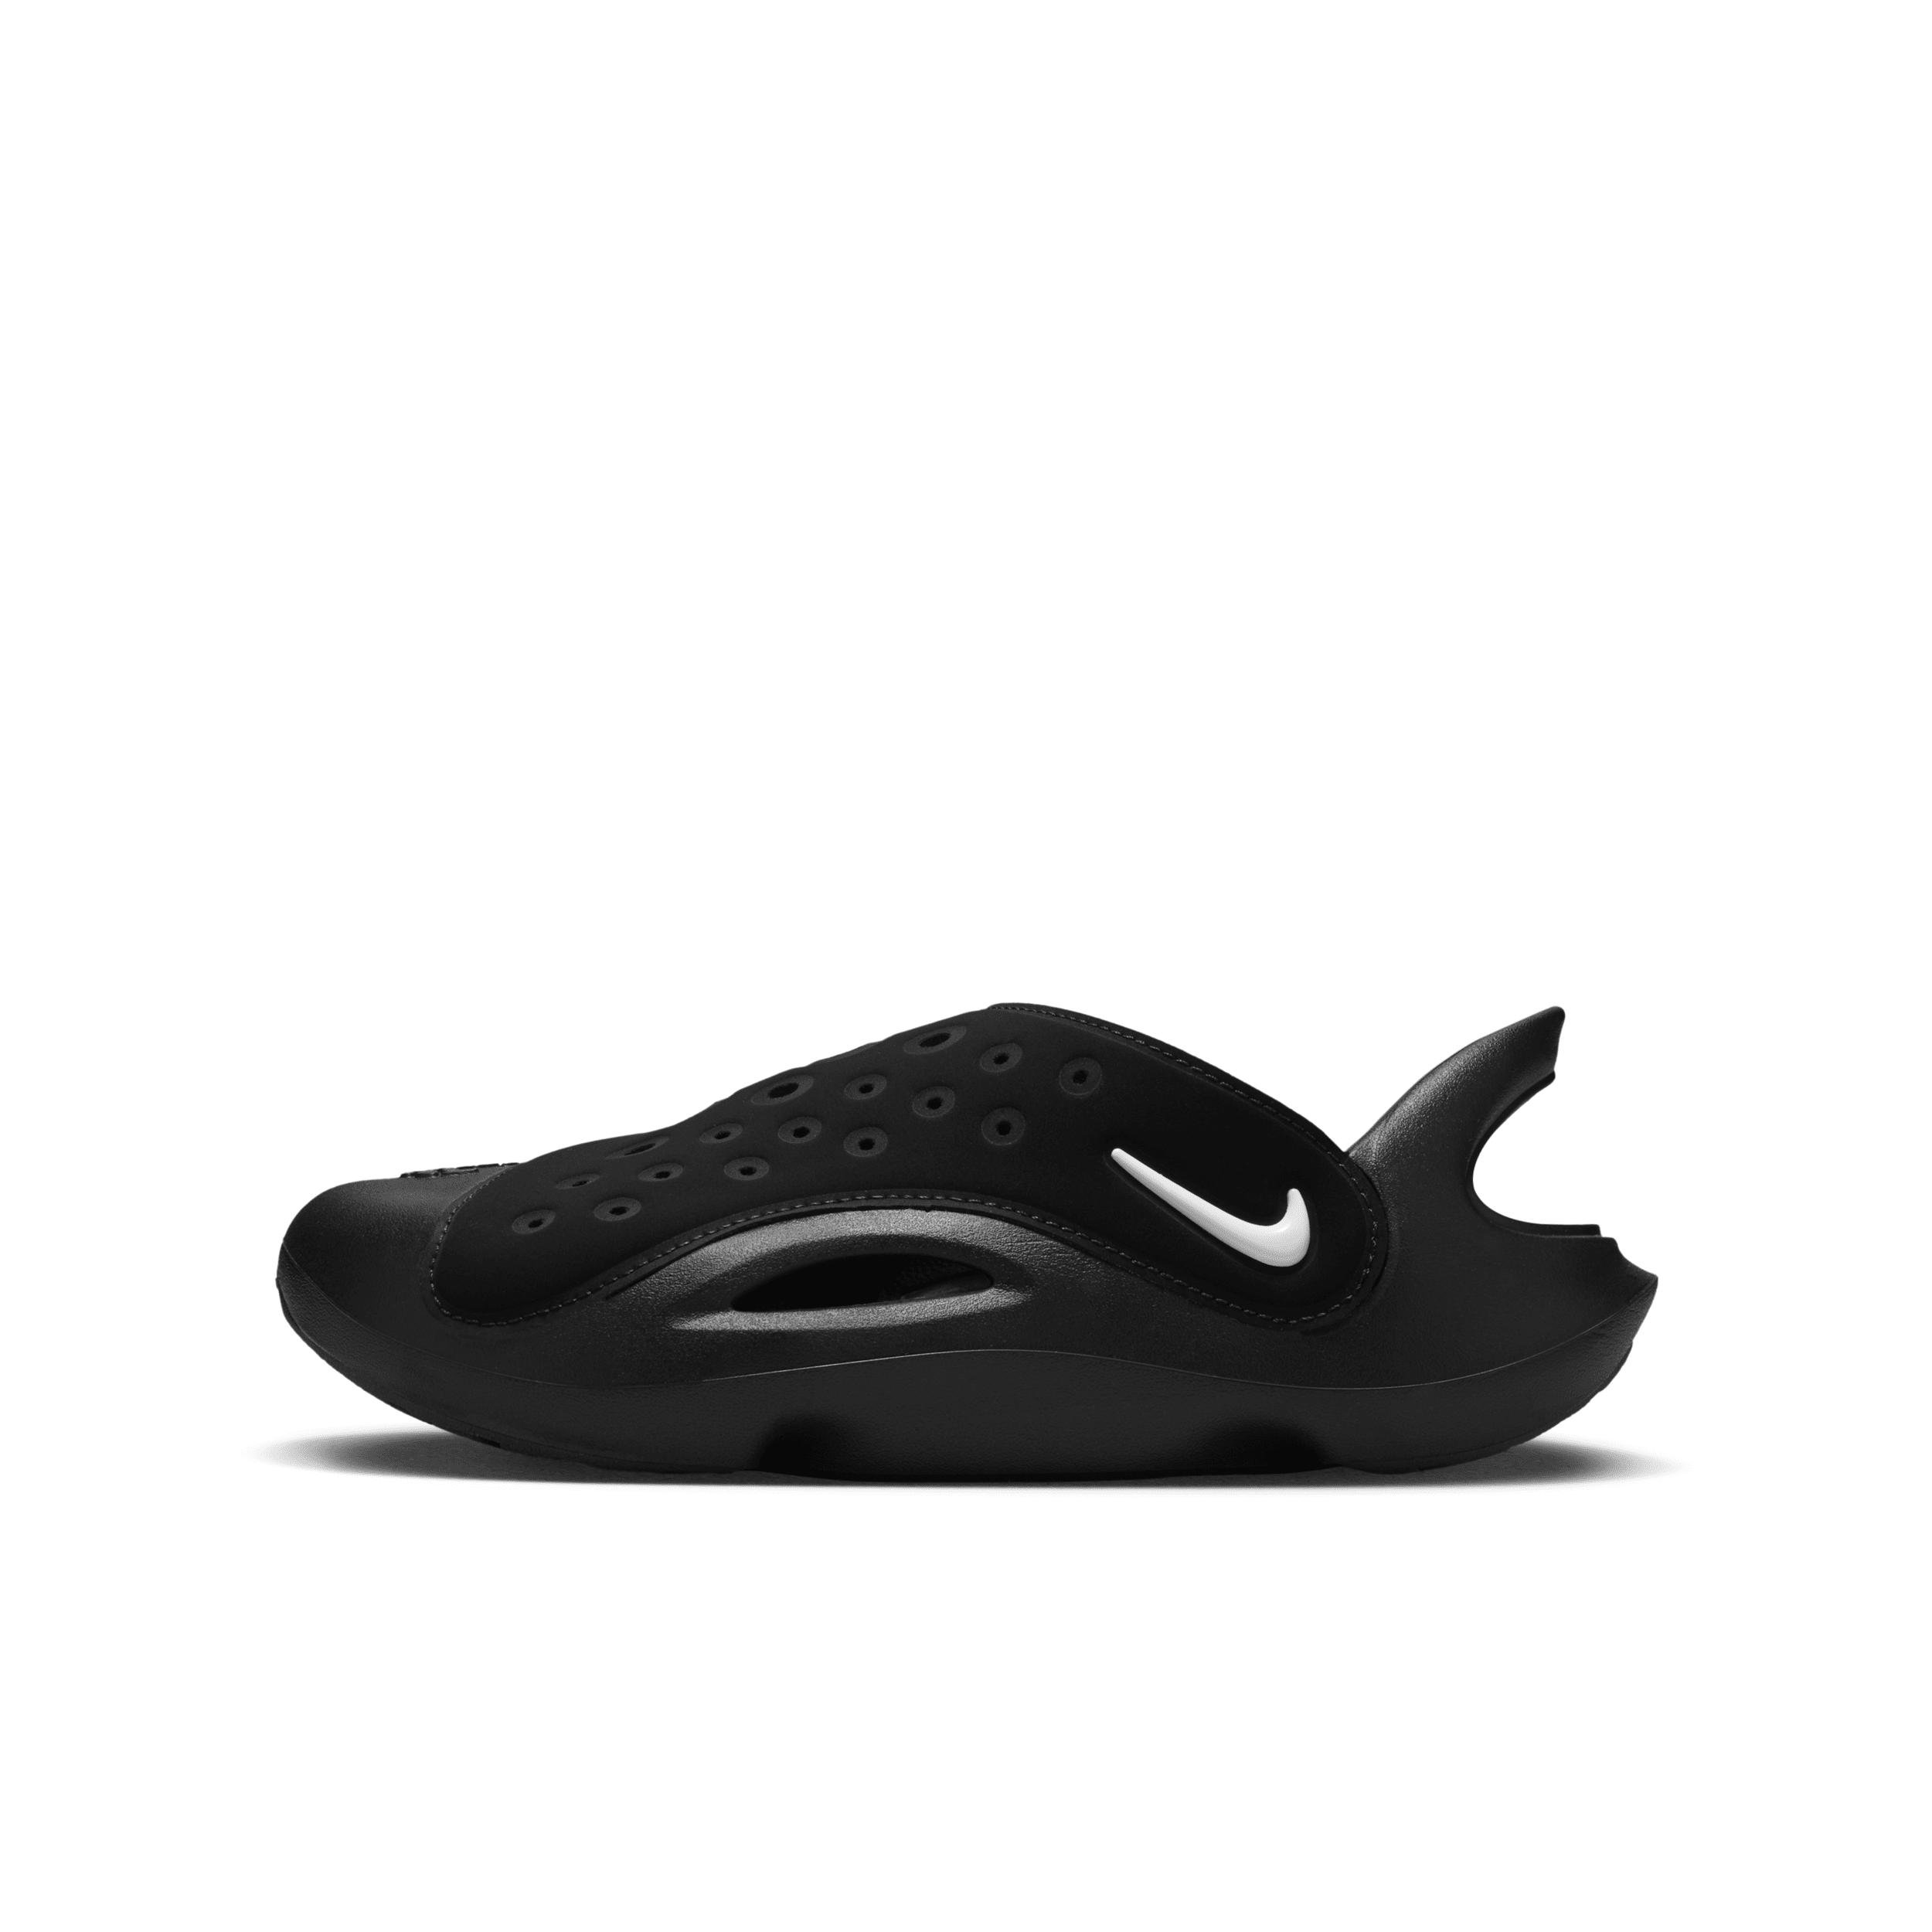 Nike Aqua Swoosh Big Kids' Sandals by NIKE